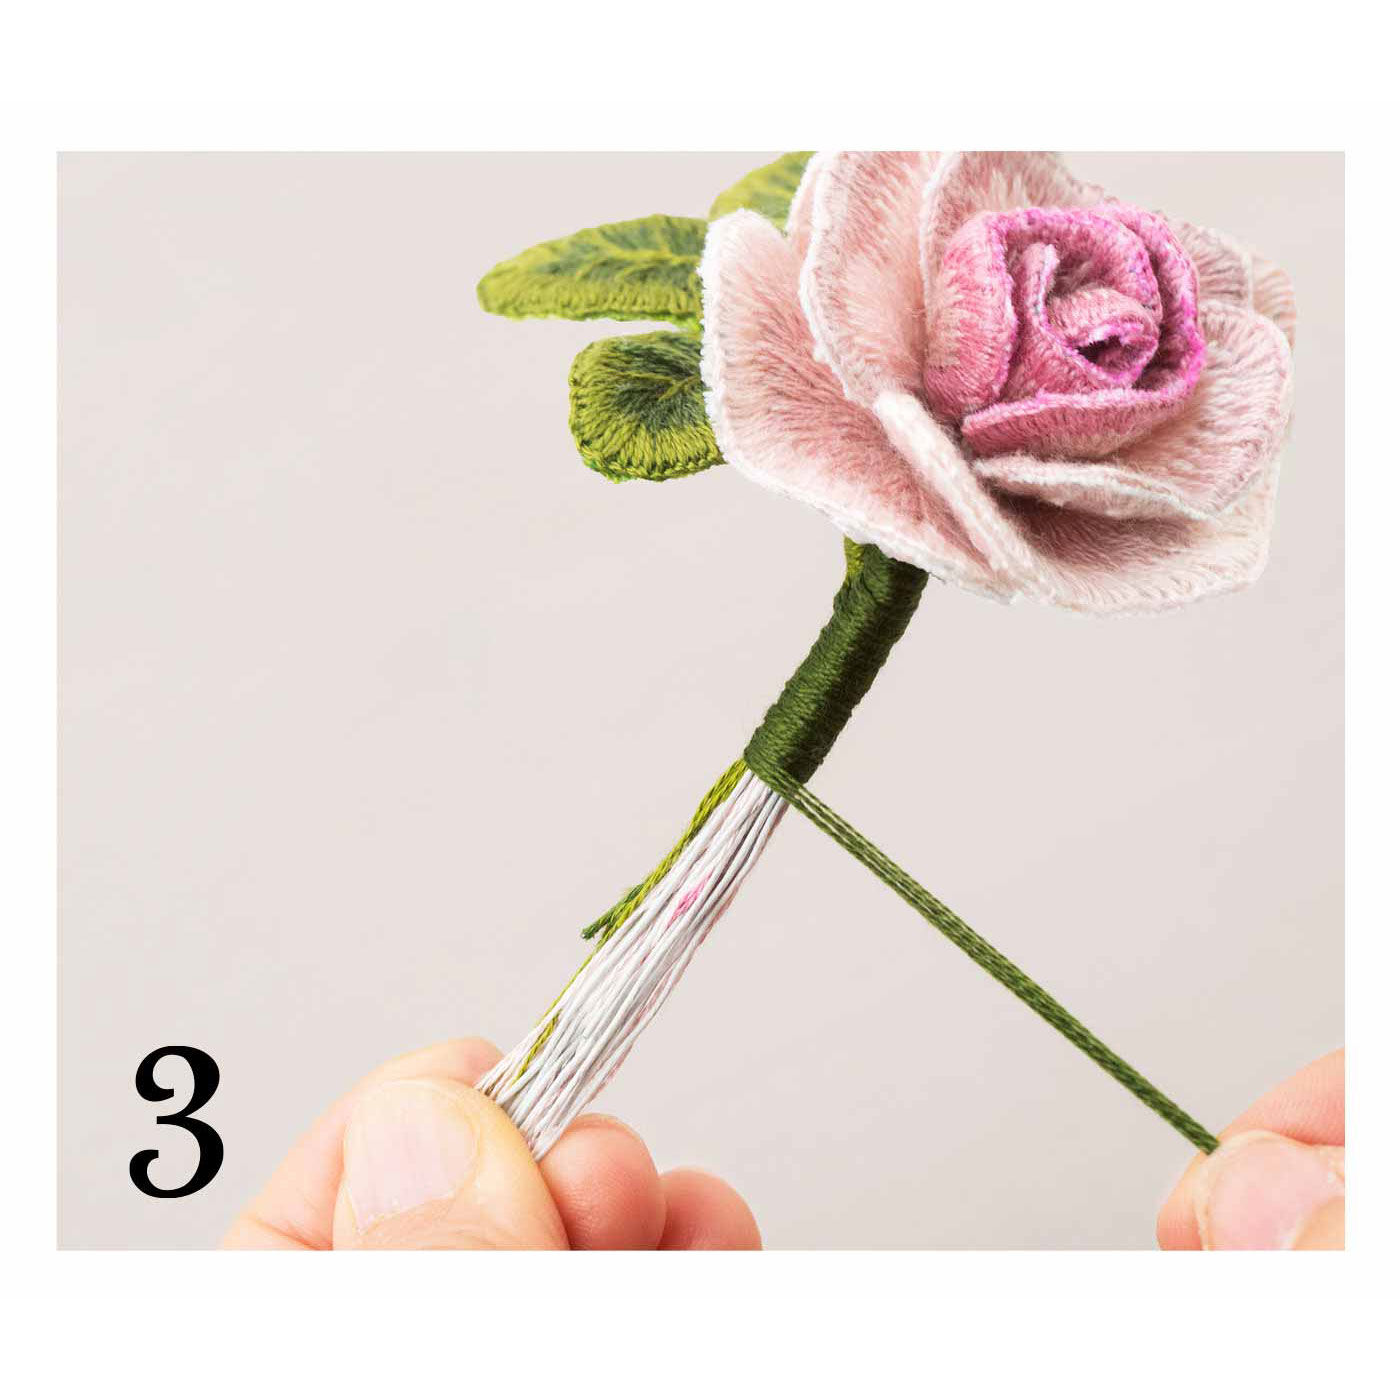 クチュリエ|多彩な花を咲かせて立体的な刺しゅうを楽しむ スタンプワークの会|ワイヤーに刺しゅう糸を巻き付け、お花の形に組み立てます。